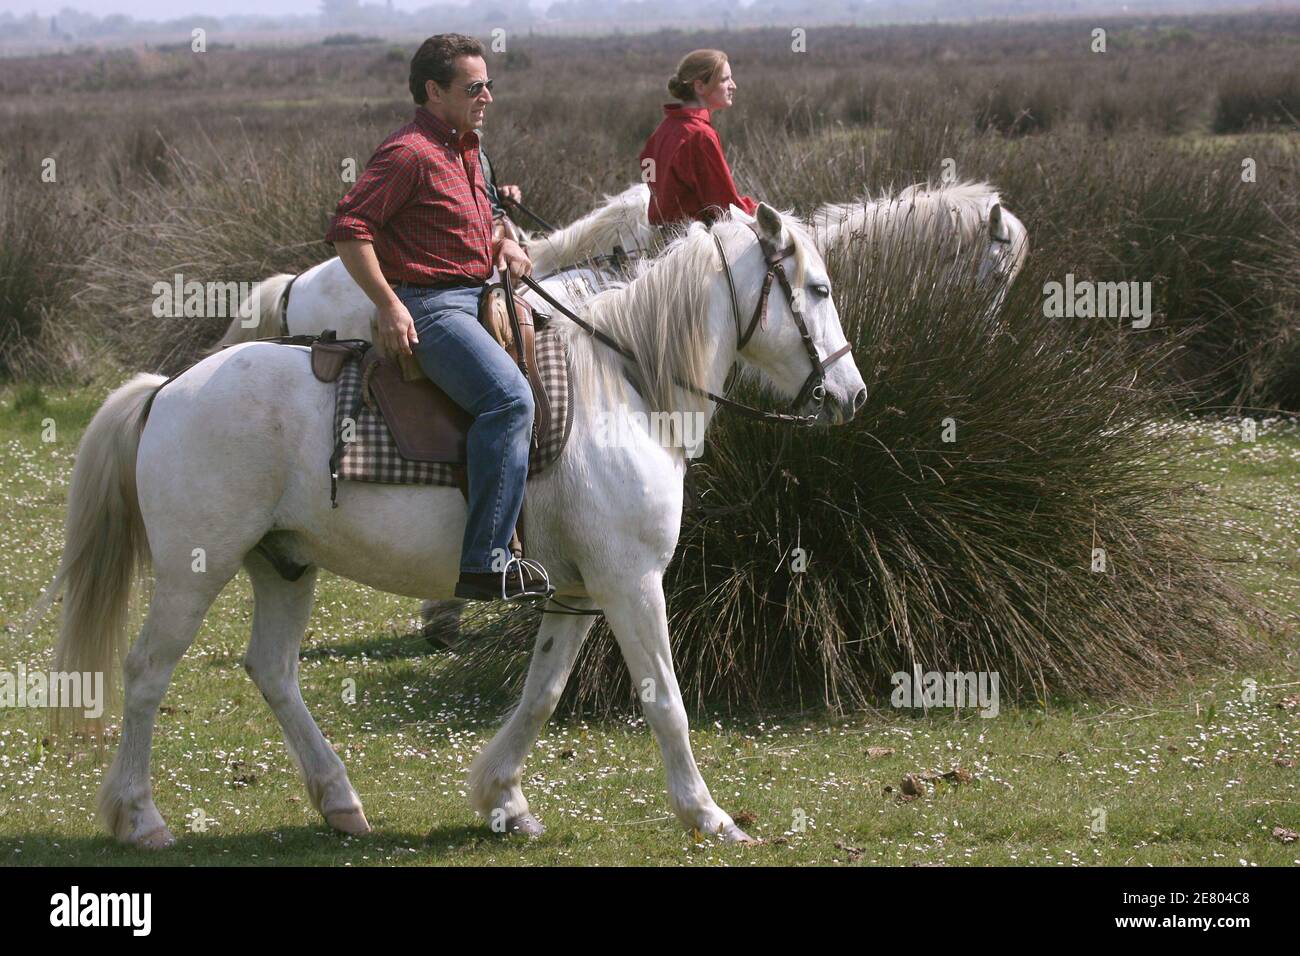 Nicolas Sarkozy, dirigeant de l'UMP et candidat à la présidence, fait un cheval blanc local lors de sa visite d'une ferme de taureaux à Saintes-Marie de la Mer, dans le sud-est de la France, le 20 avril 2007. Photo de Mehdi Taamallah/ABACAPRESS.COM Banque D'Images